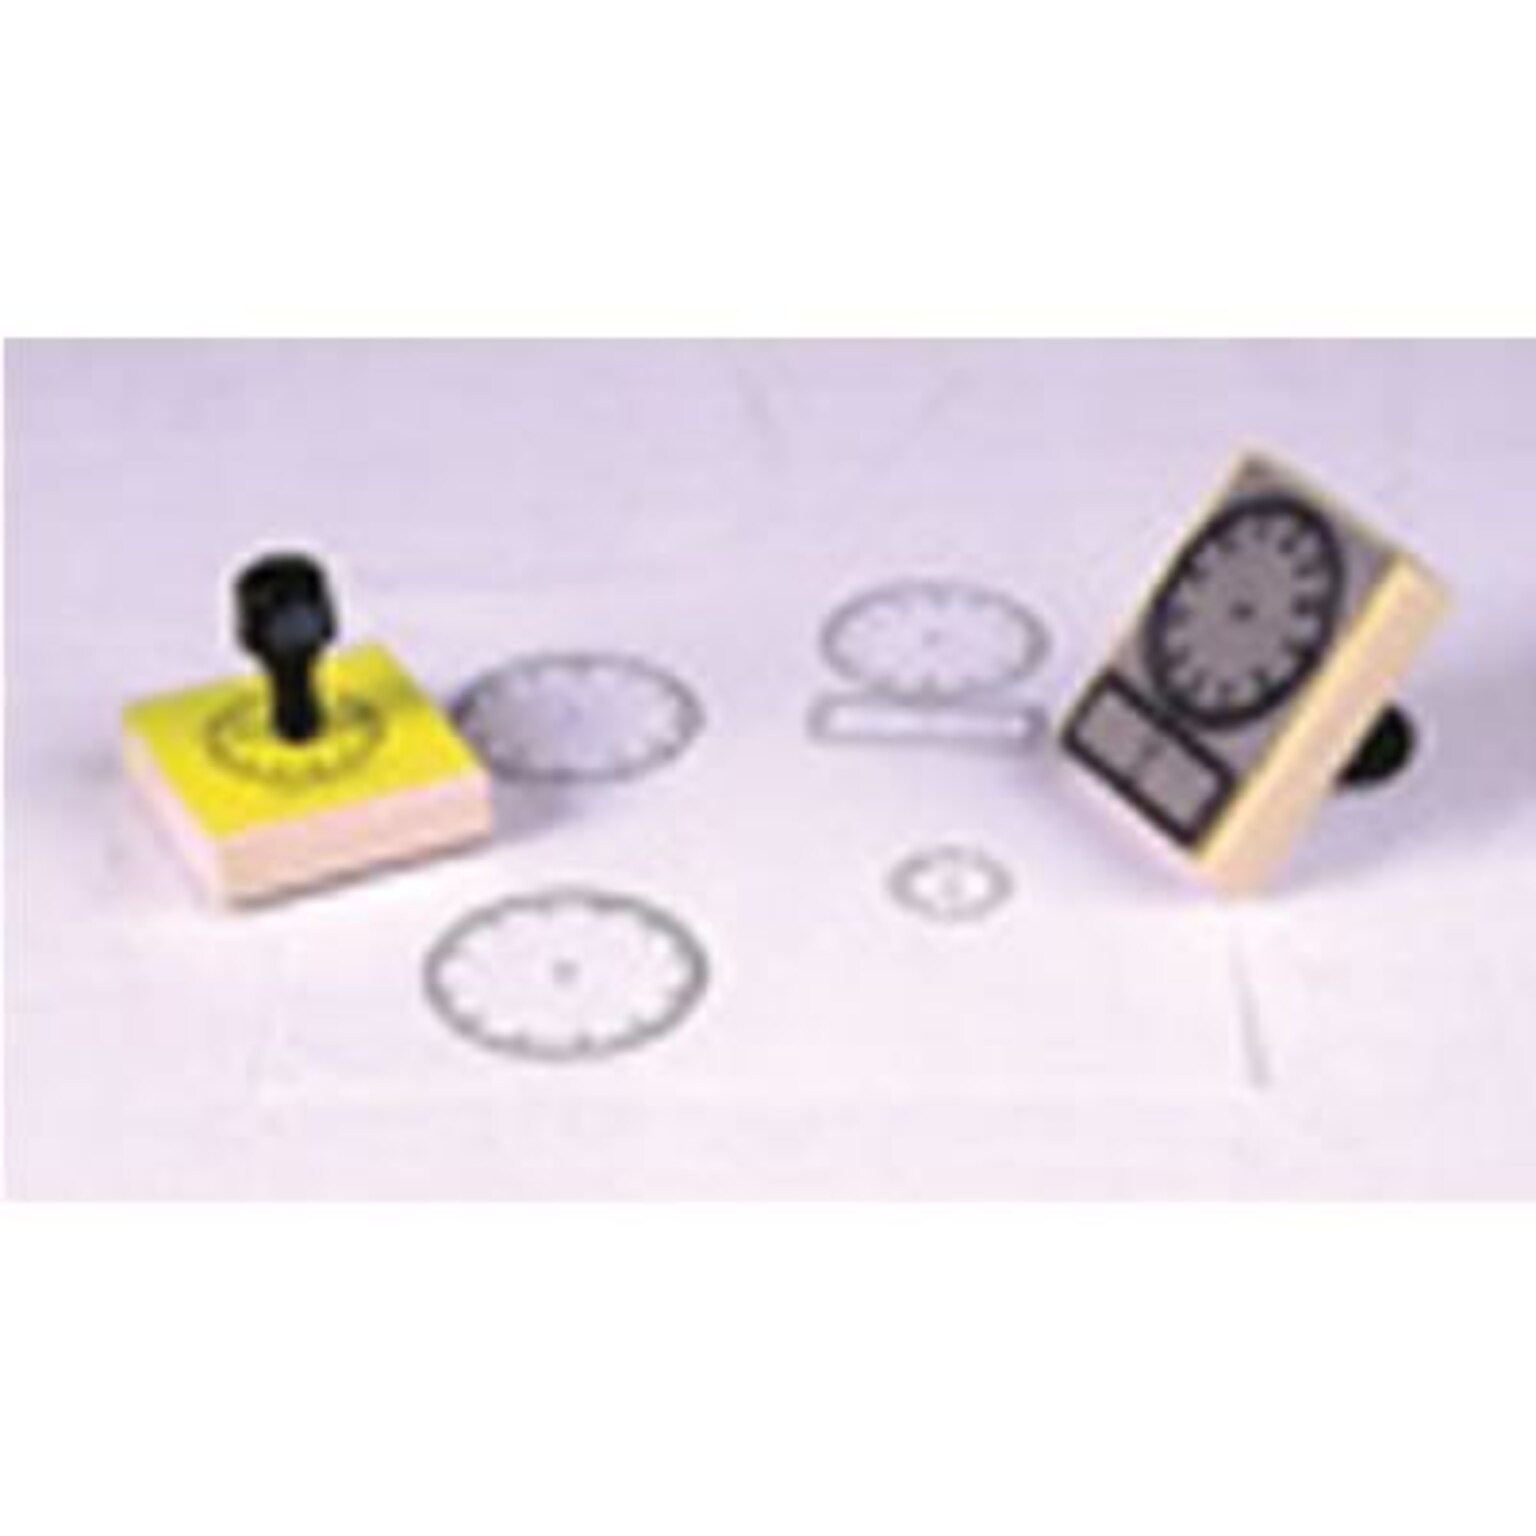 Digital Clock Stamp